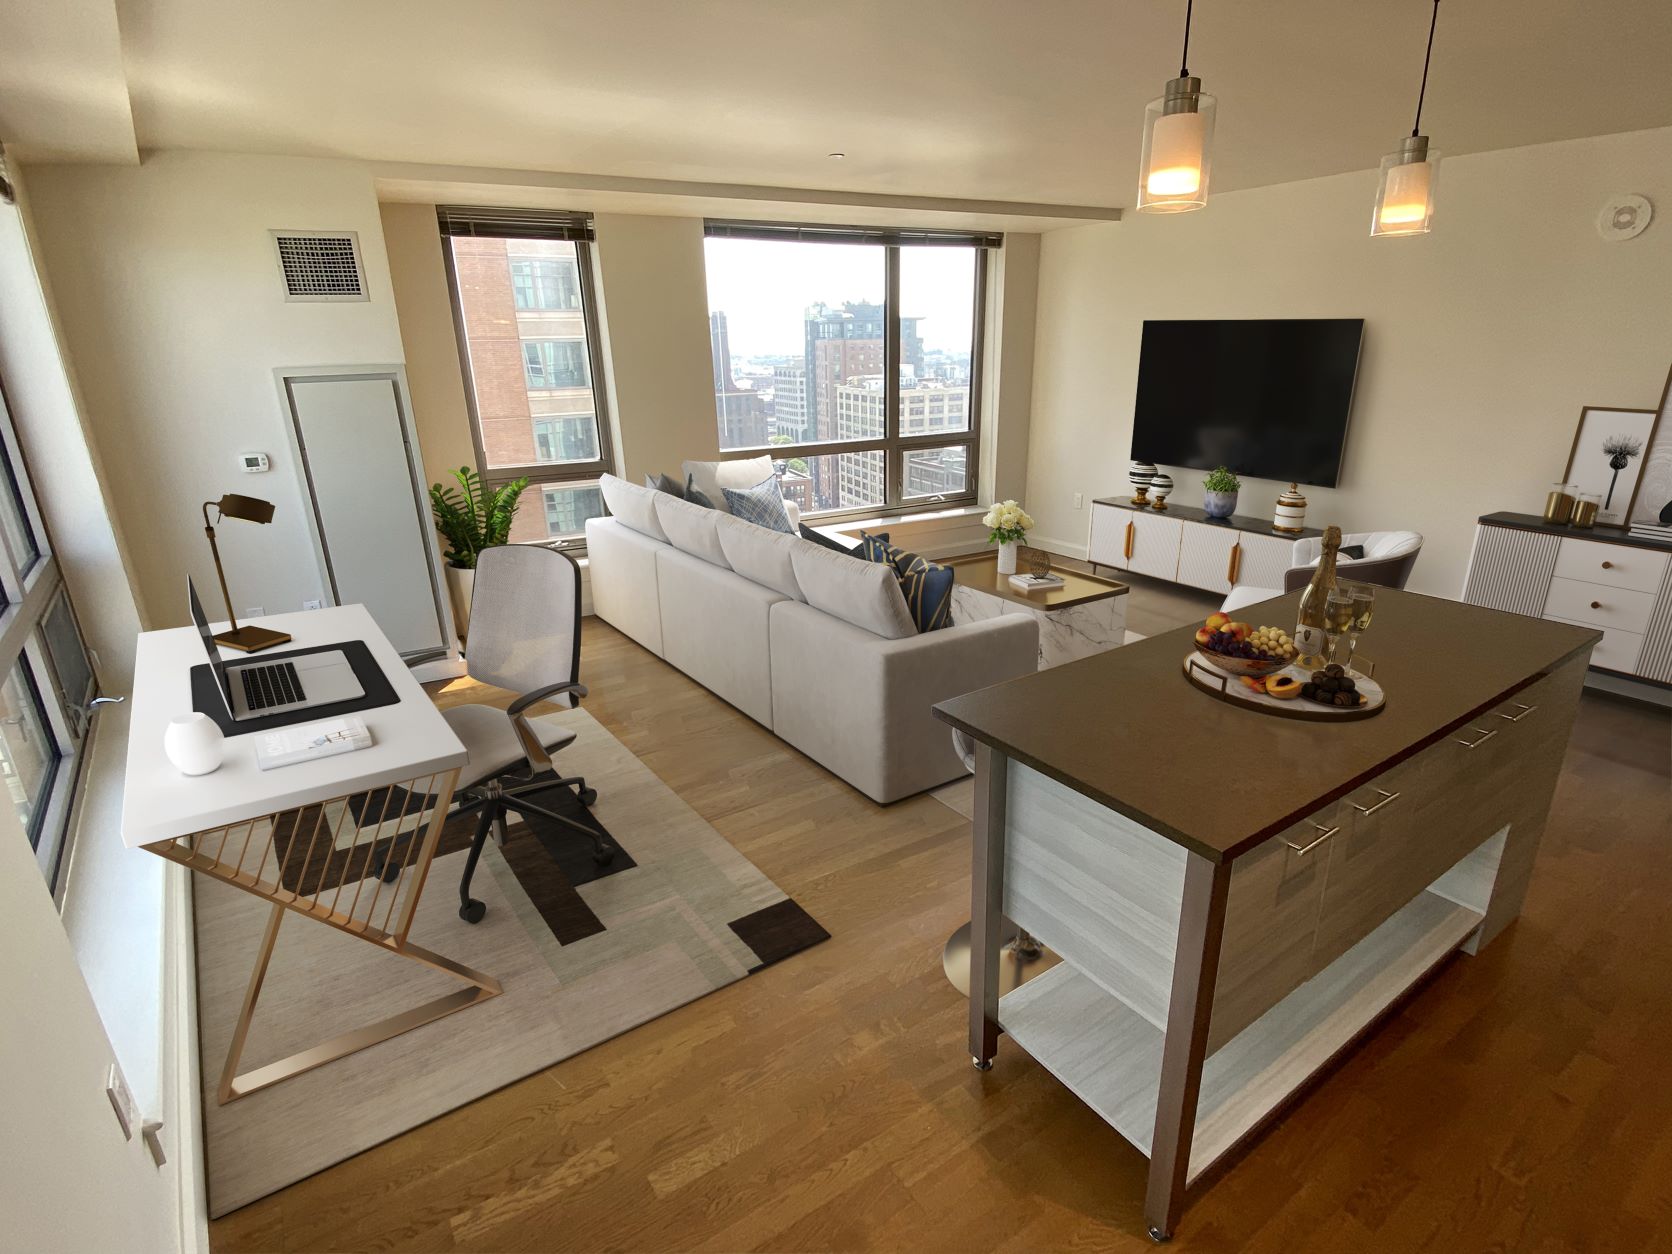 Photos of apartment on Exeter,Boston MA 02116